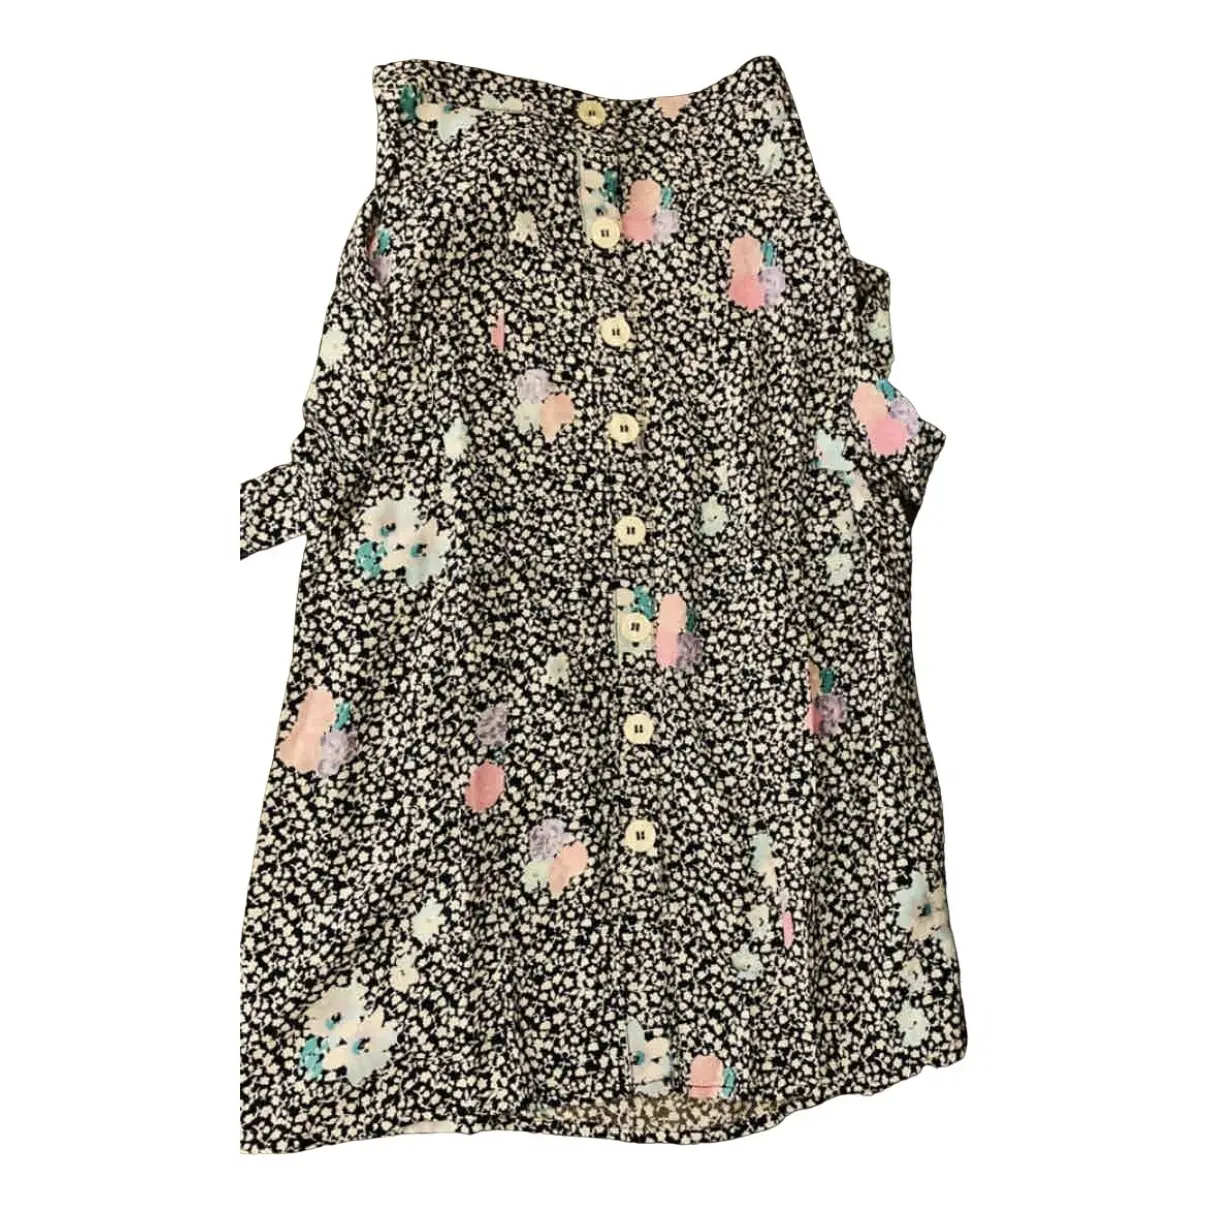 Spring Summer 2020 mid-length skirt Rouje